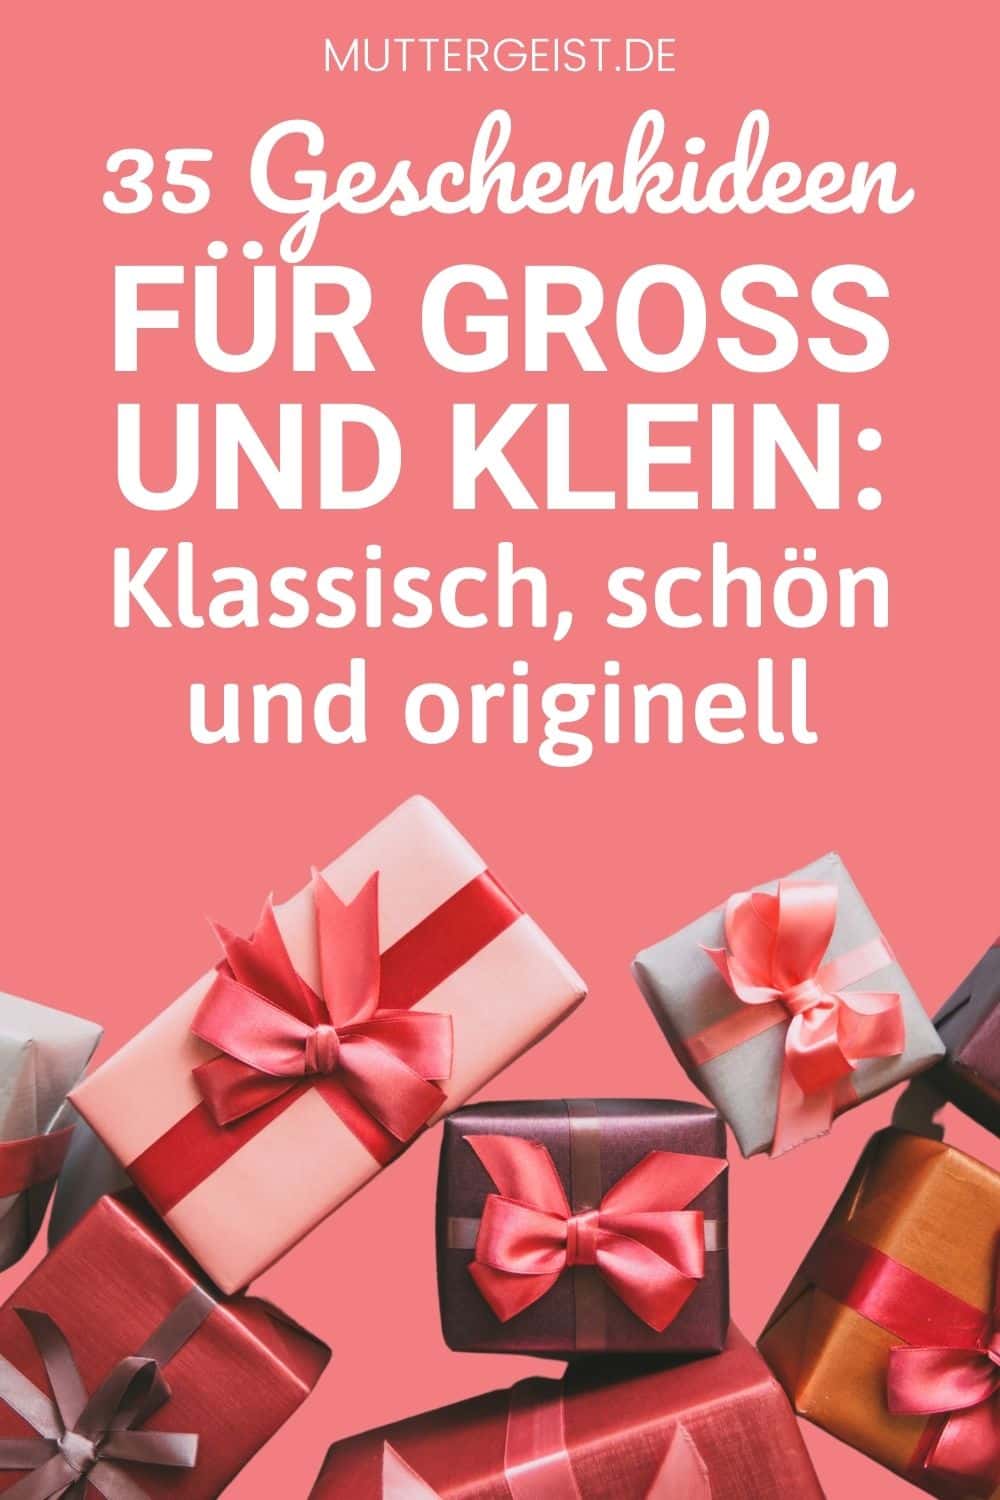 35 Geschenkideen für Groß und Klein – Klassisch, schön und originell Pinterest